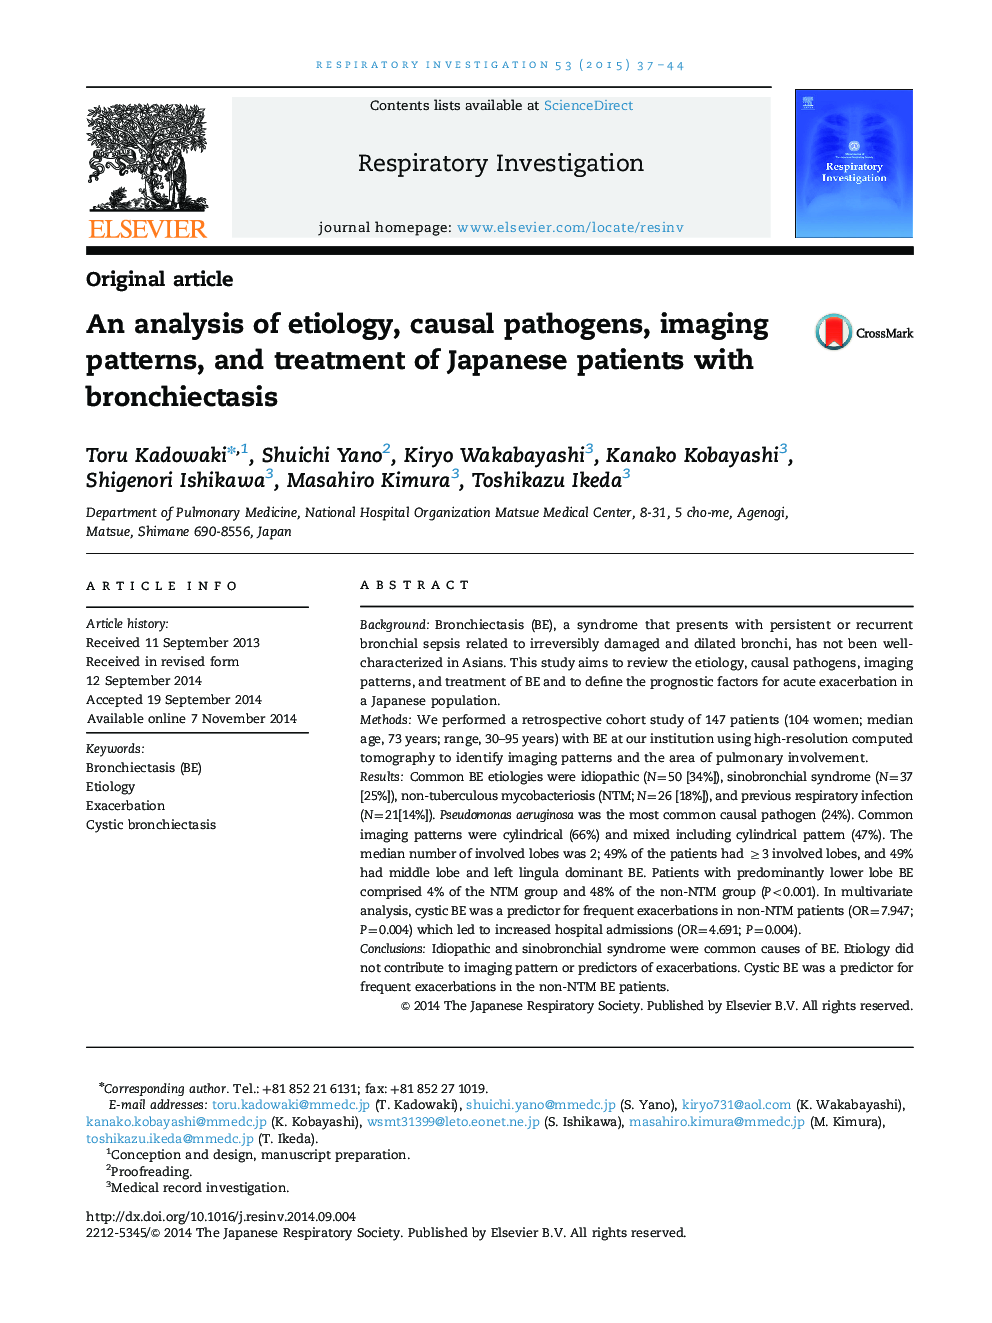 تجزیه و تحلیل علل، پاتوژن های علی، الگوهای تصویربرداری و درمان بیماران ژاپنی با برونشکتازی 